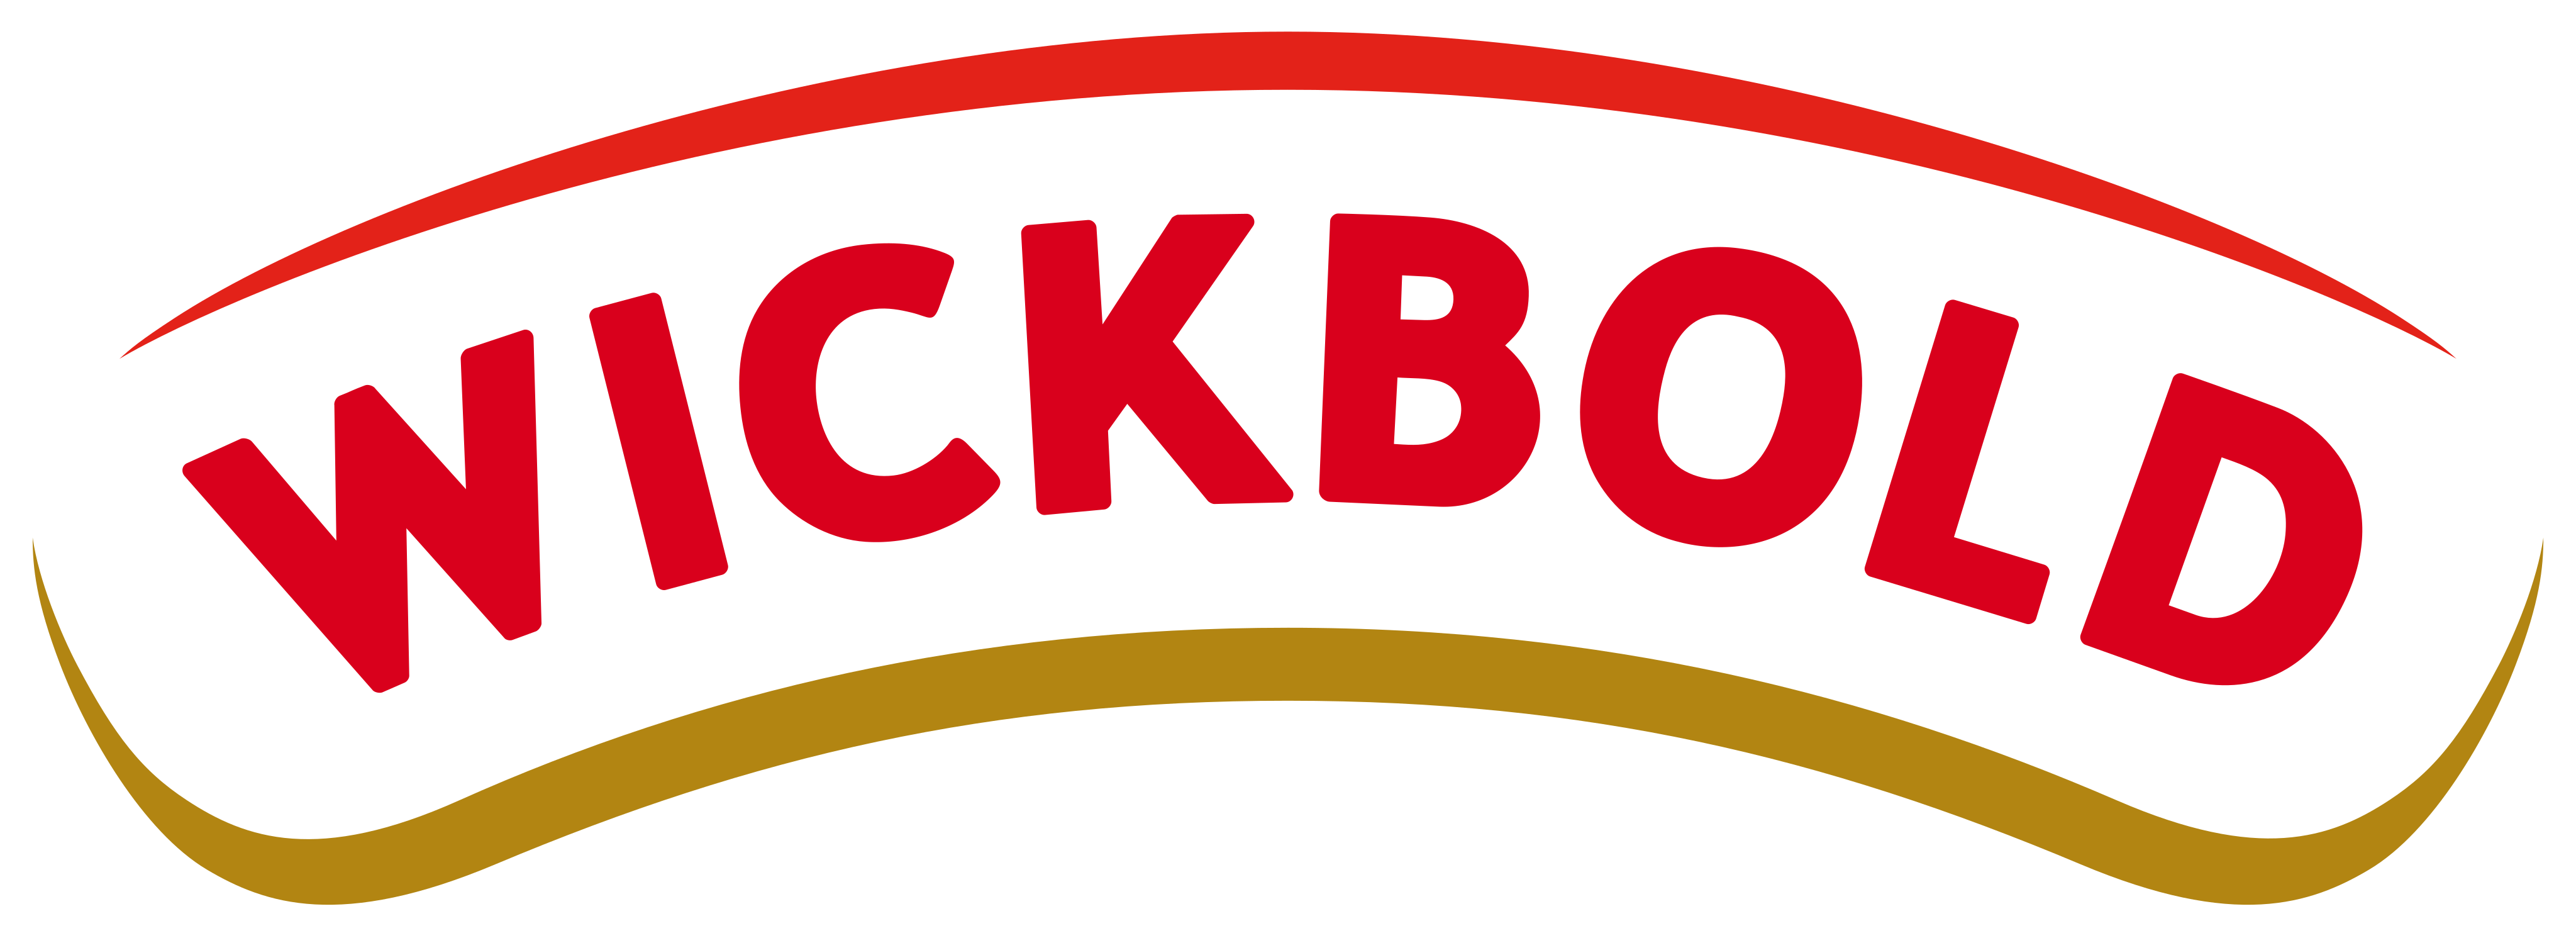 Wickbold Logo.